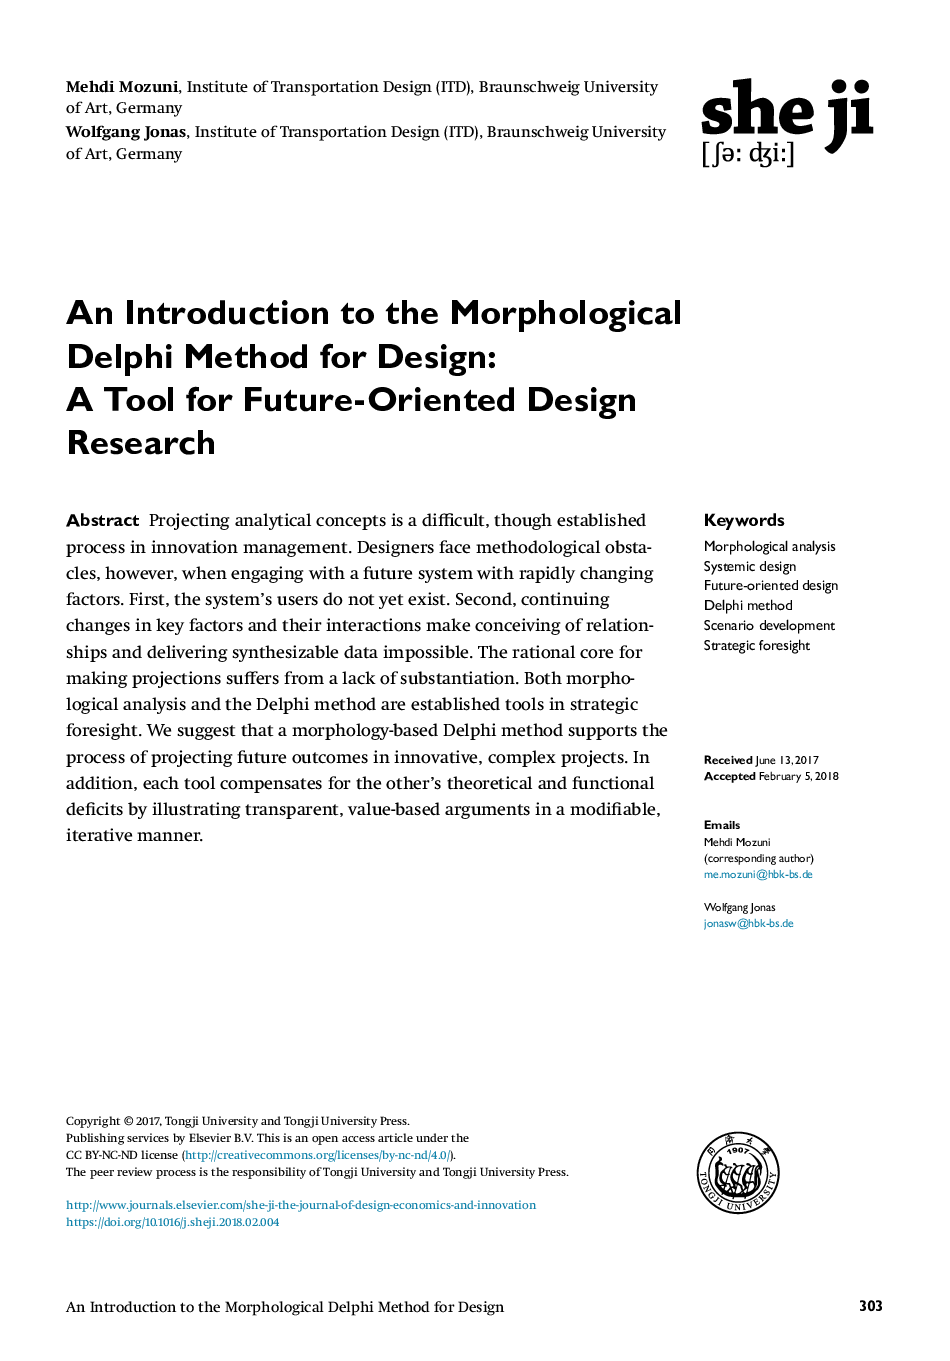 مقدمه ای بر روش دلفی مورفولوژیک برای طراحی: ابزار برای تحقیق در طراحی آینده ایده 